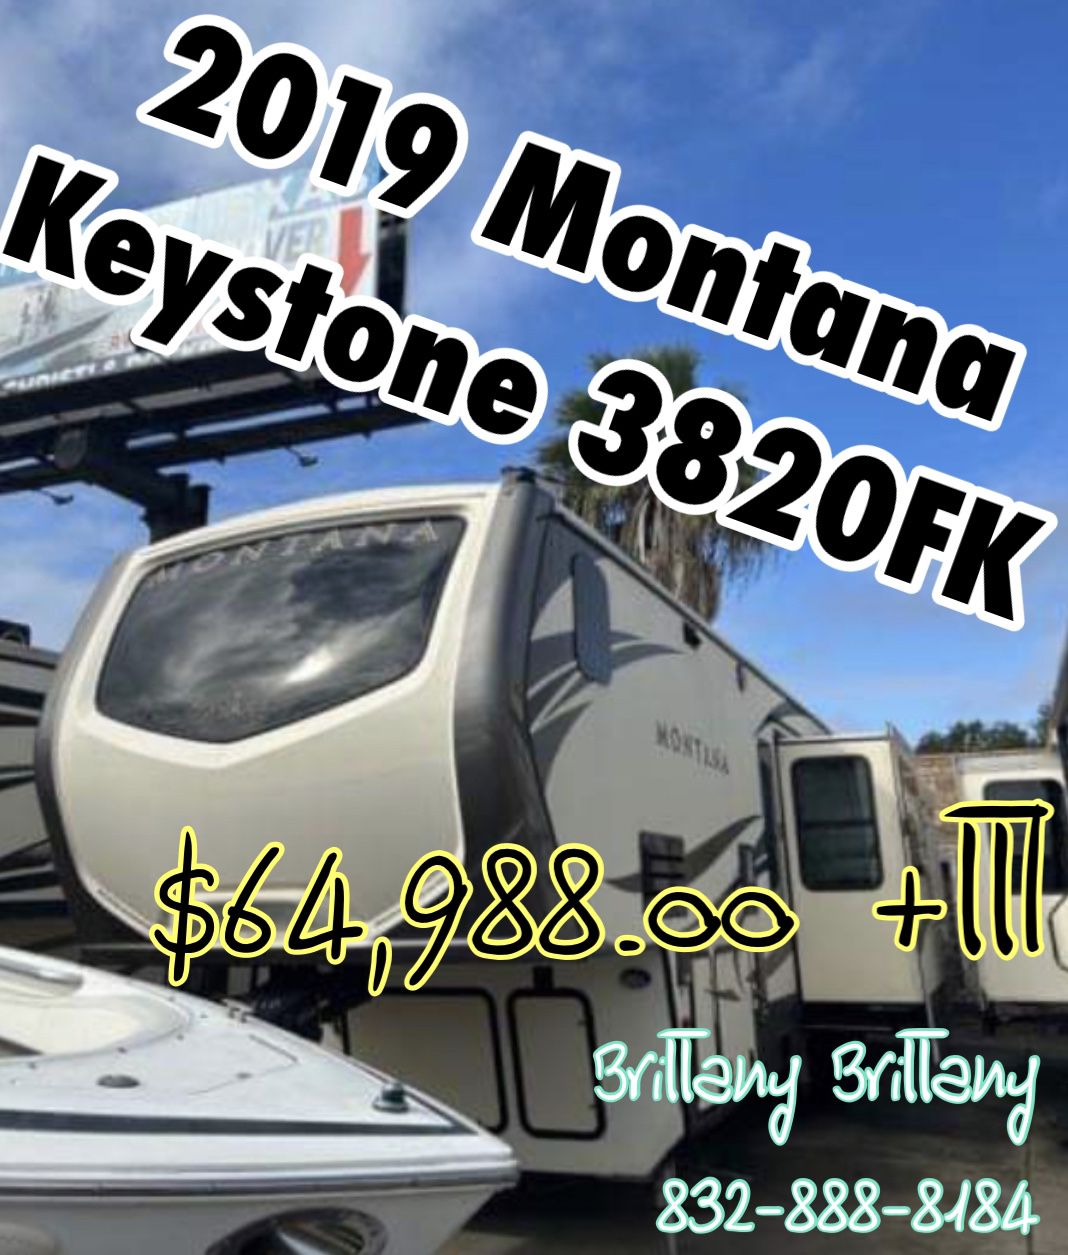 2019 Montana Keystone 3820FK